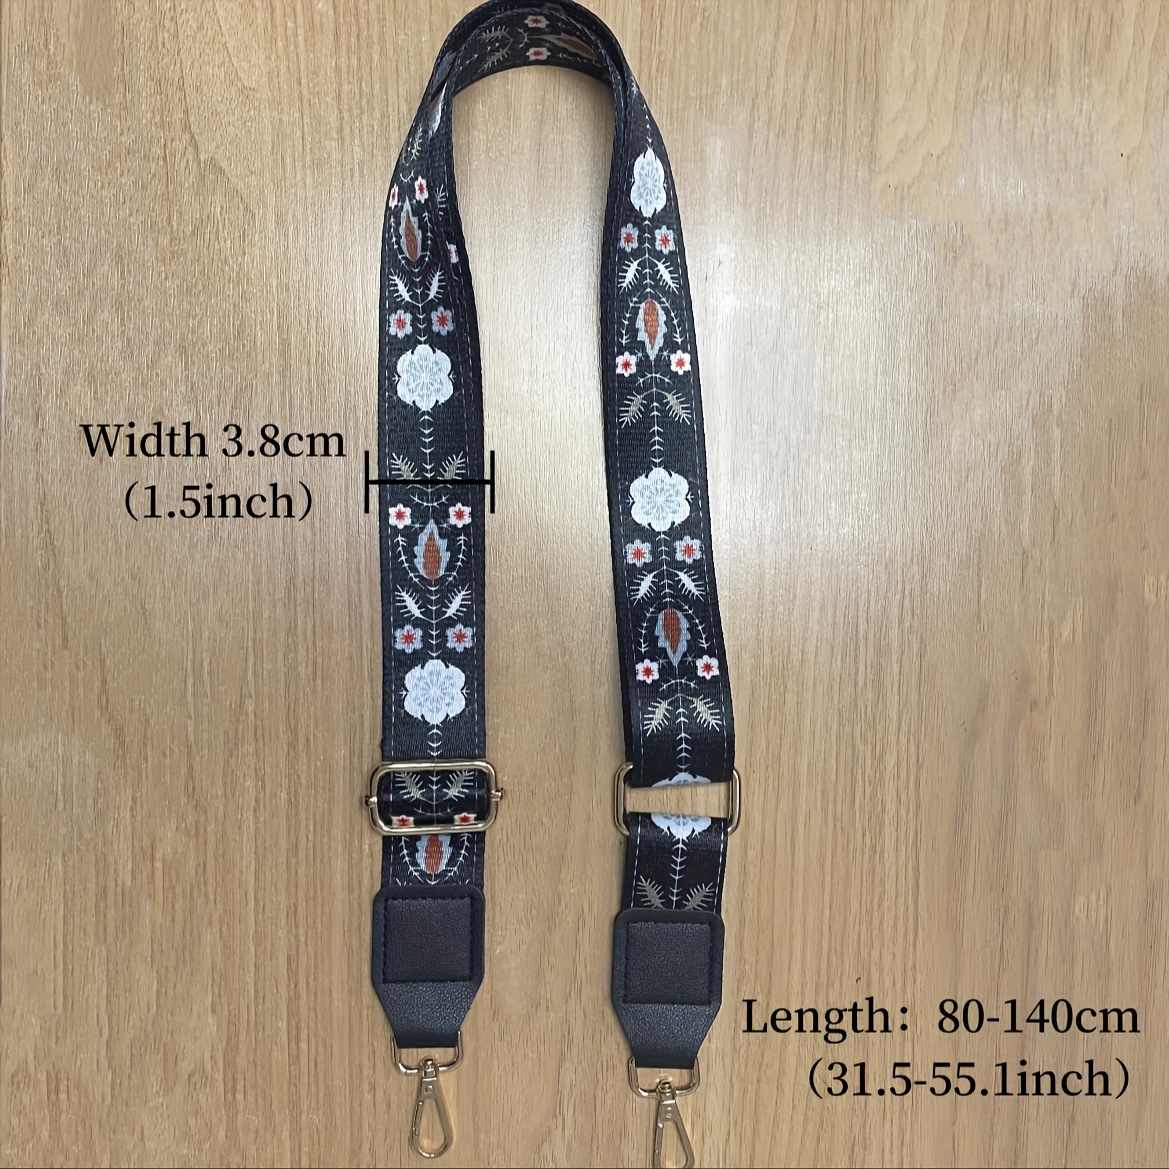 Bag Strap 93-120cm Adjustable Bag Shoulder Strap Accessories